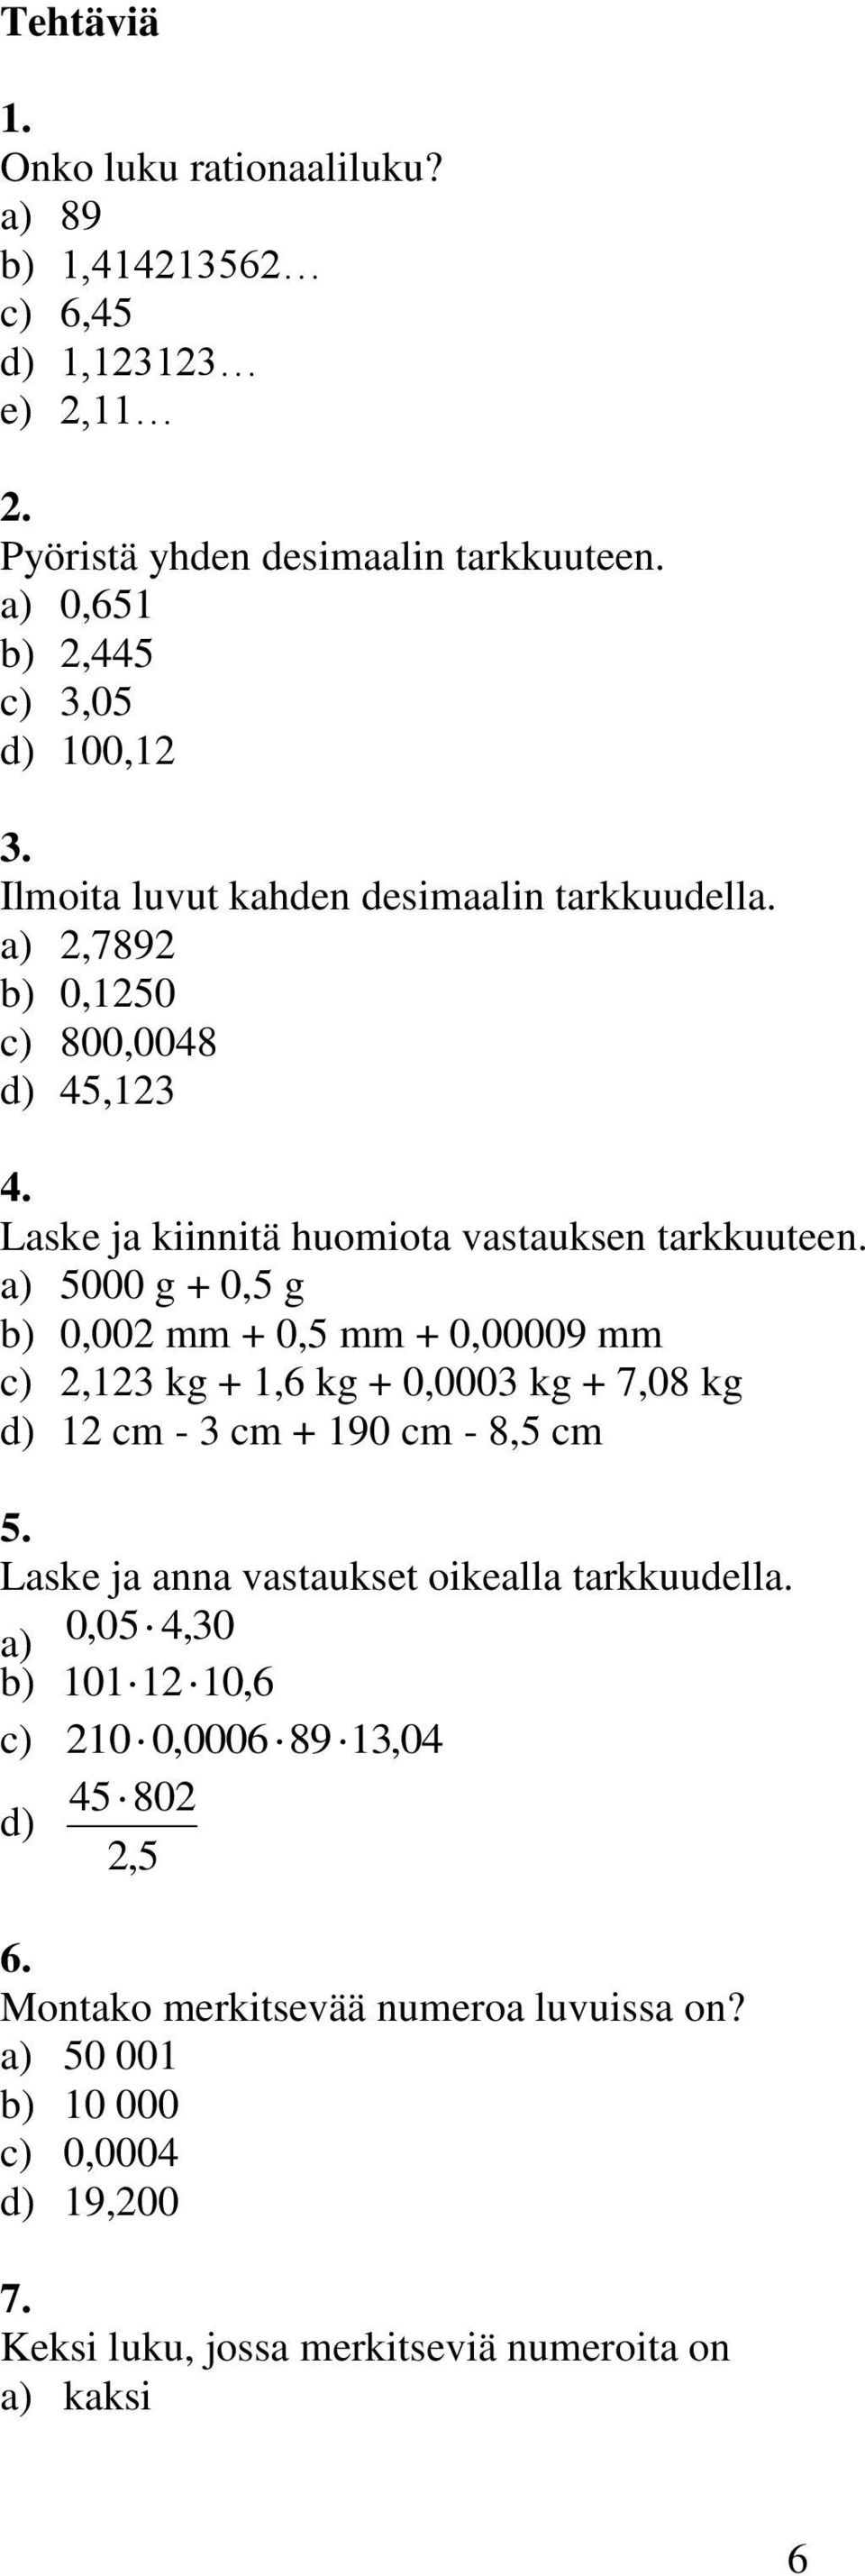 5000 g + 0,5 g 0,00 mm + 0,5 mm + 0,00009 mm, kg +,6 kg + 0,000 kg + 7,08 kg cm - cm + 90 cm - 8,5 cm 5.